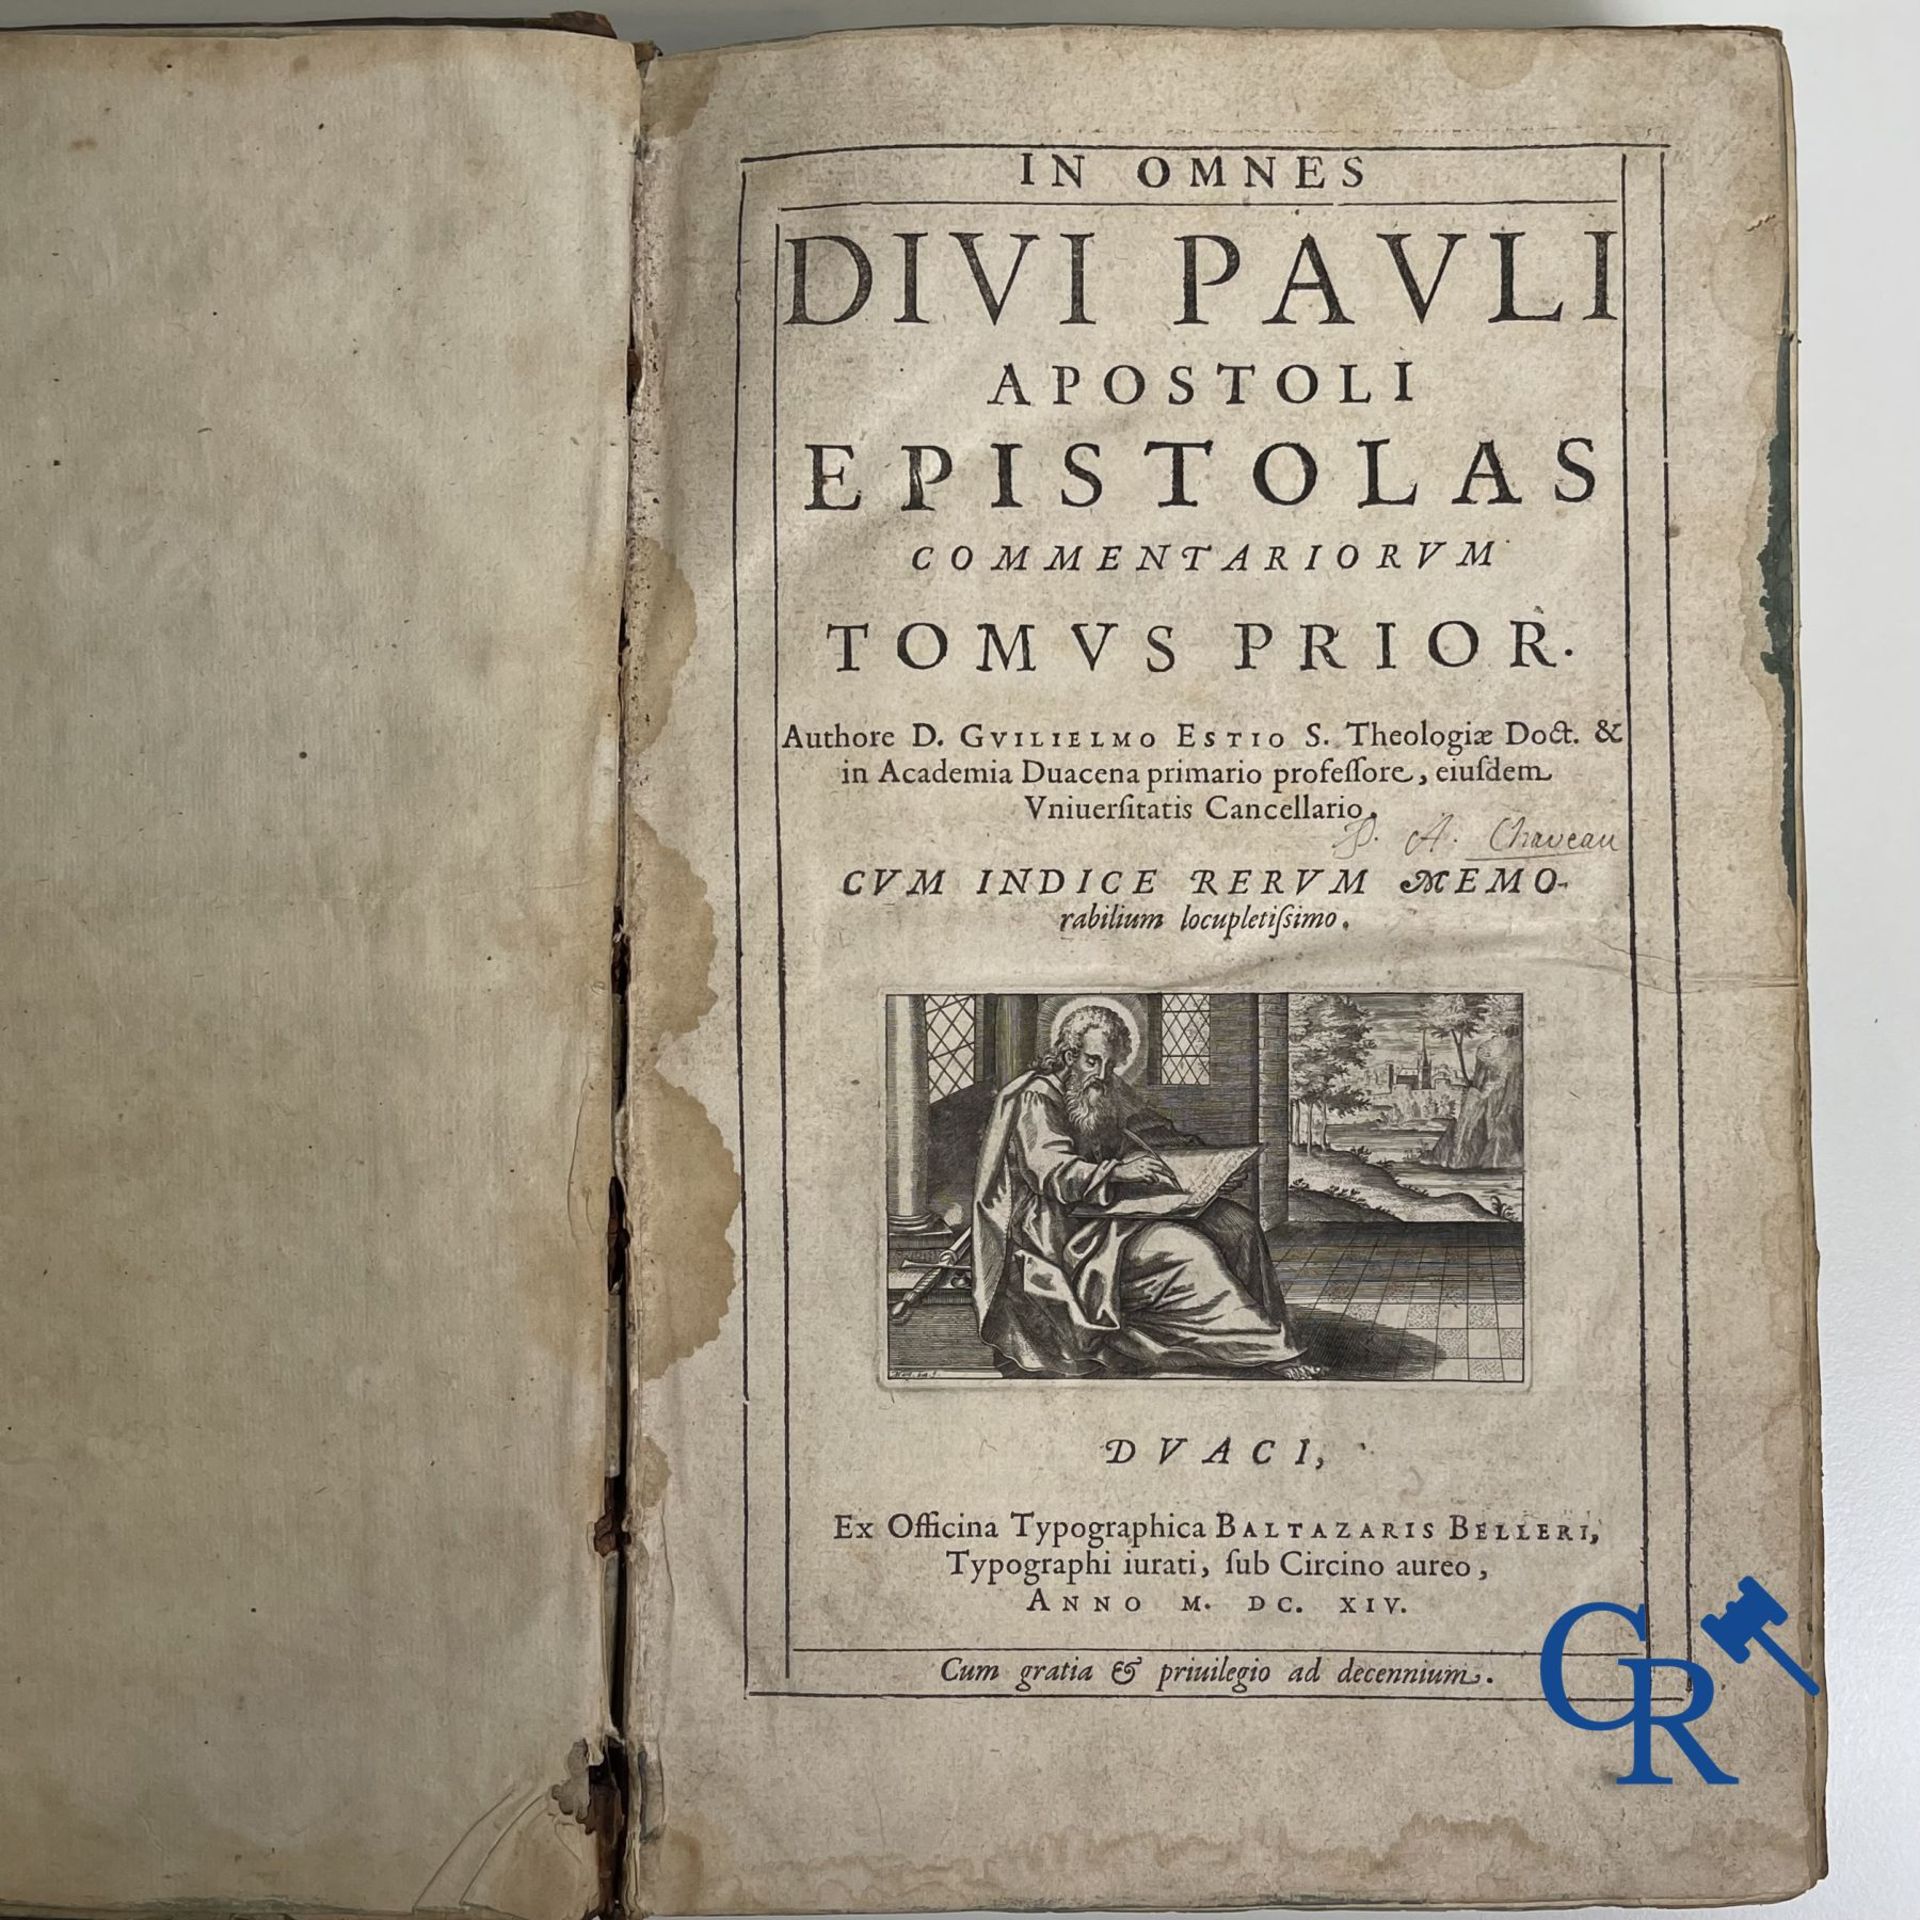 Early printed books: Willem Hessels van Est (1542-1613) The Epistles of St. Paul. Tomus prior en tom